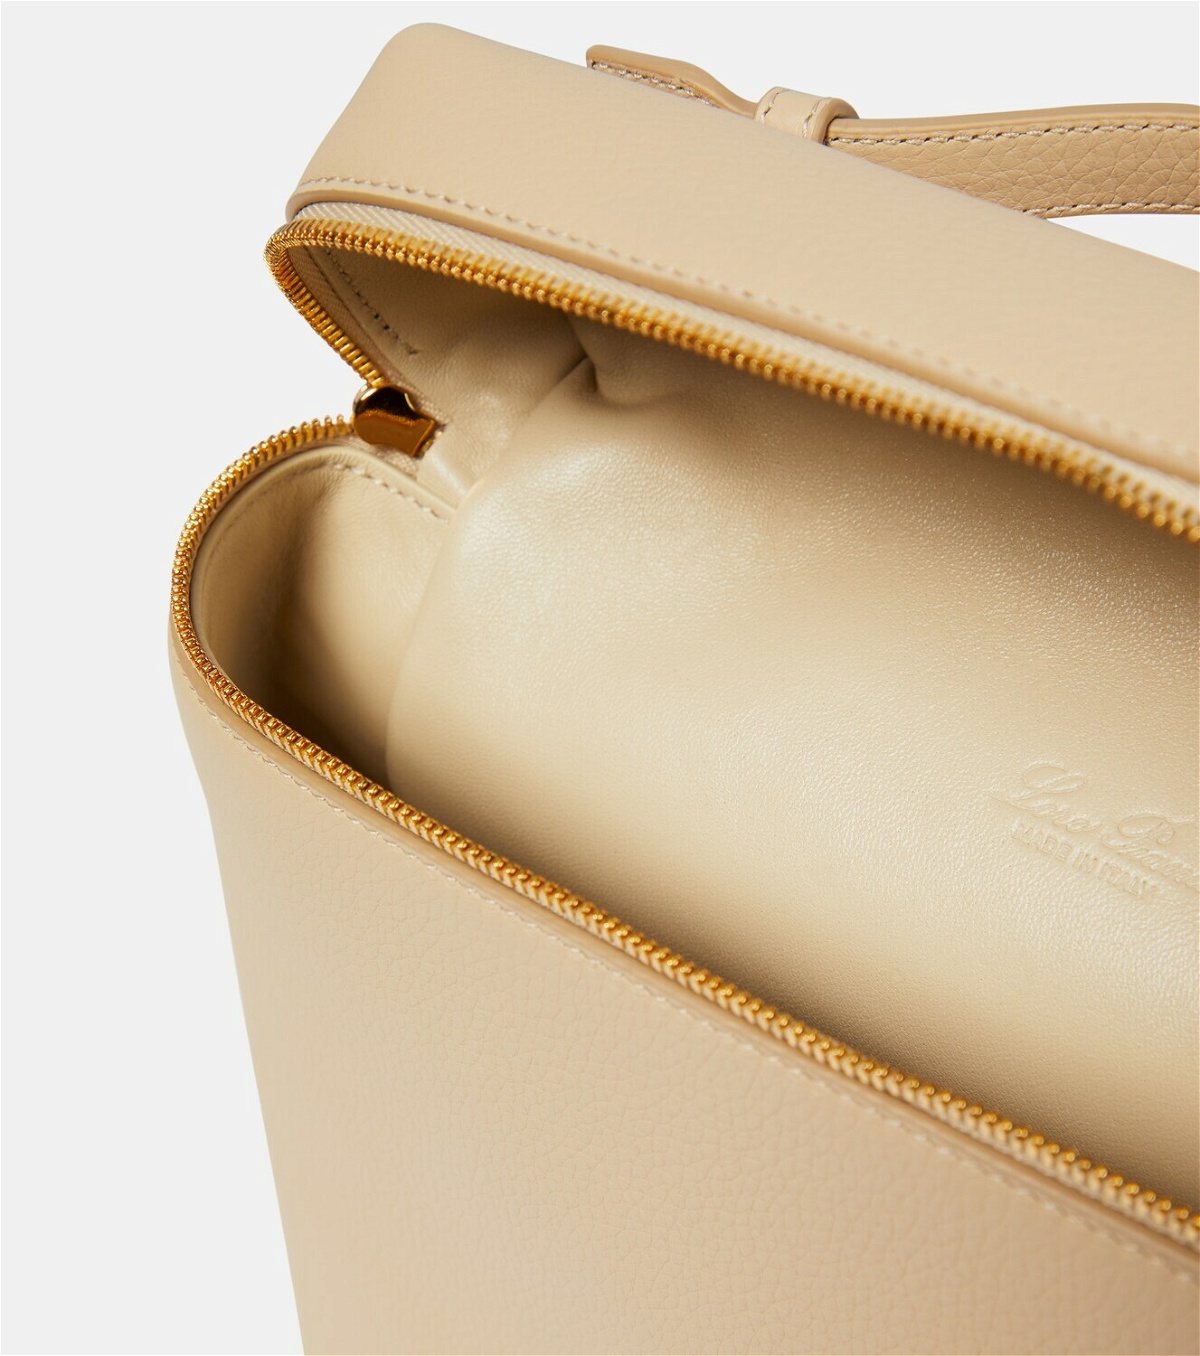 Loro Piana - Extra Pocket L19 leather crossbody bag, Mytheresa